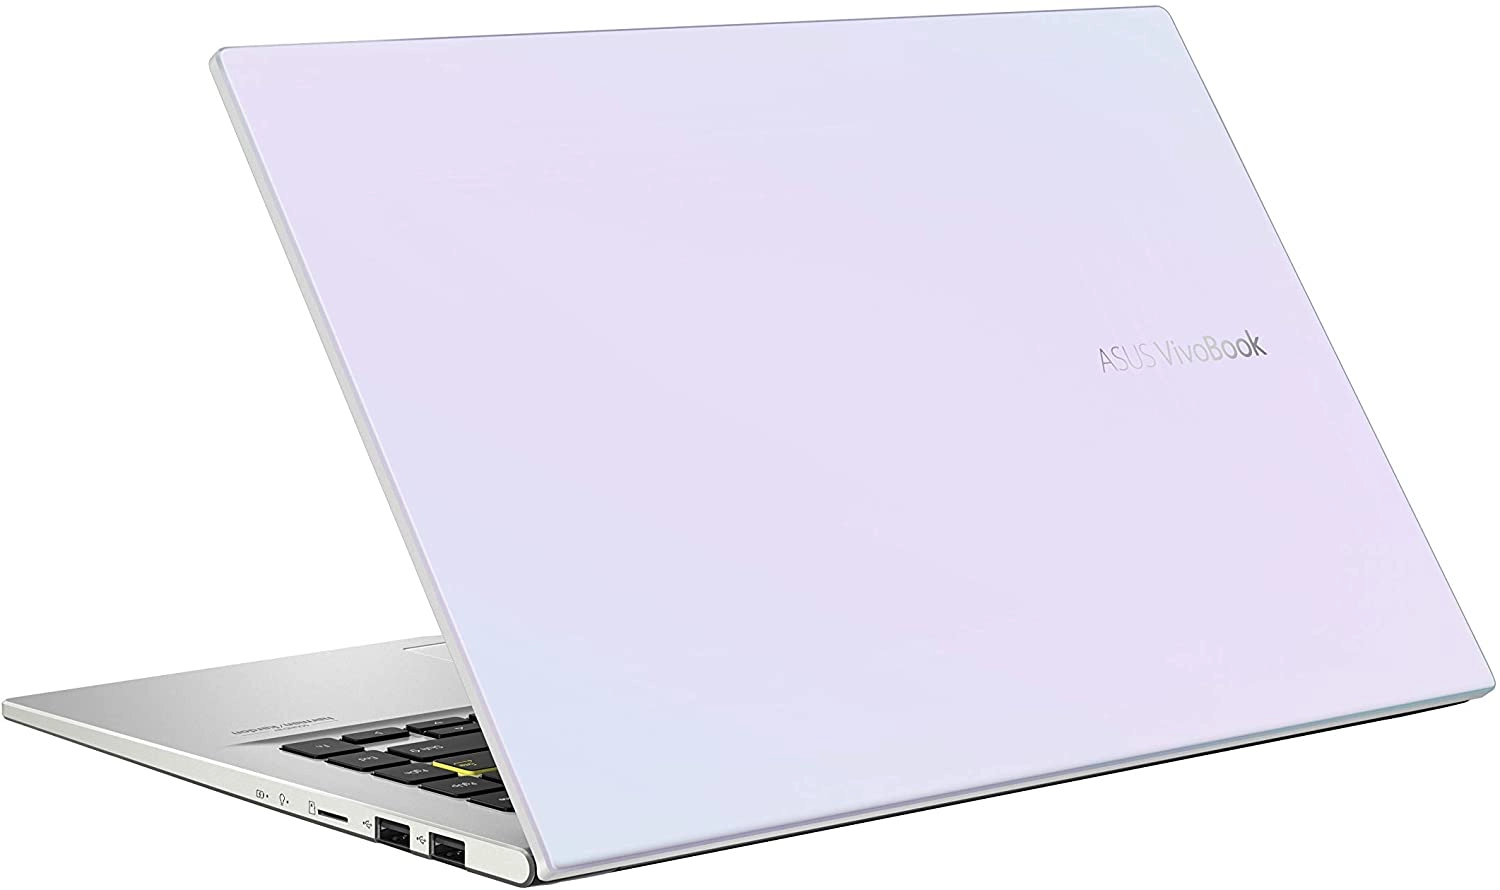 Asus M413DA-EB462T laptop image